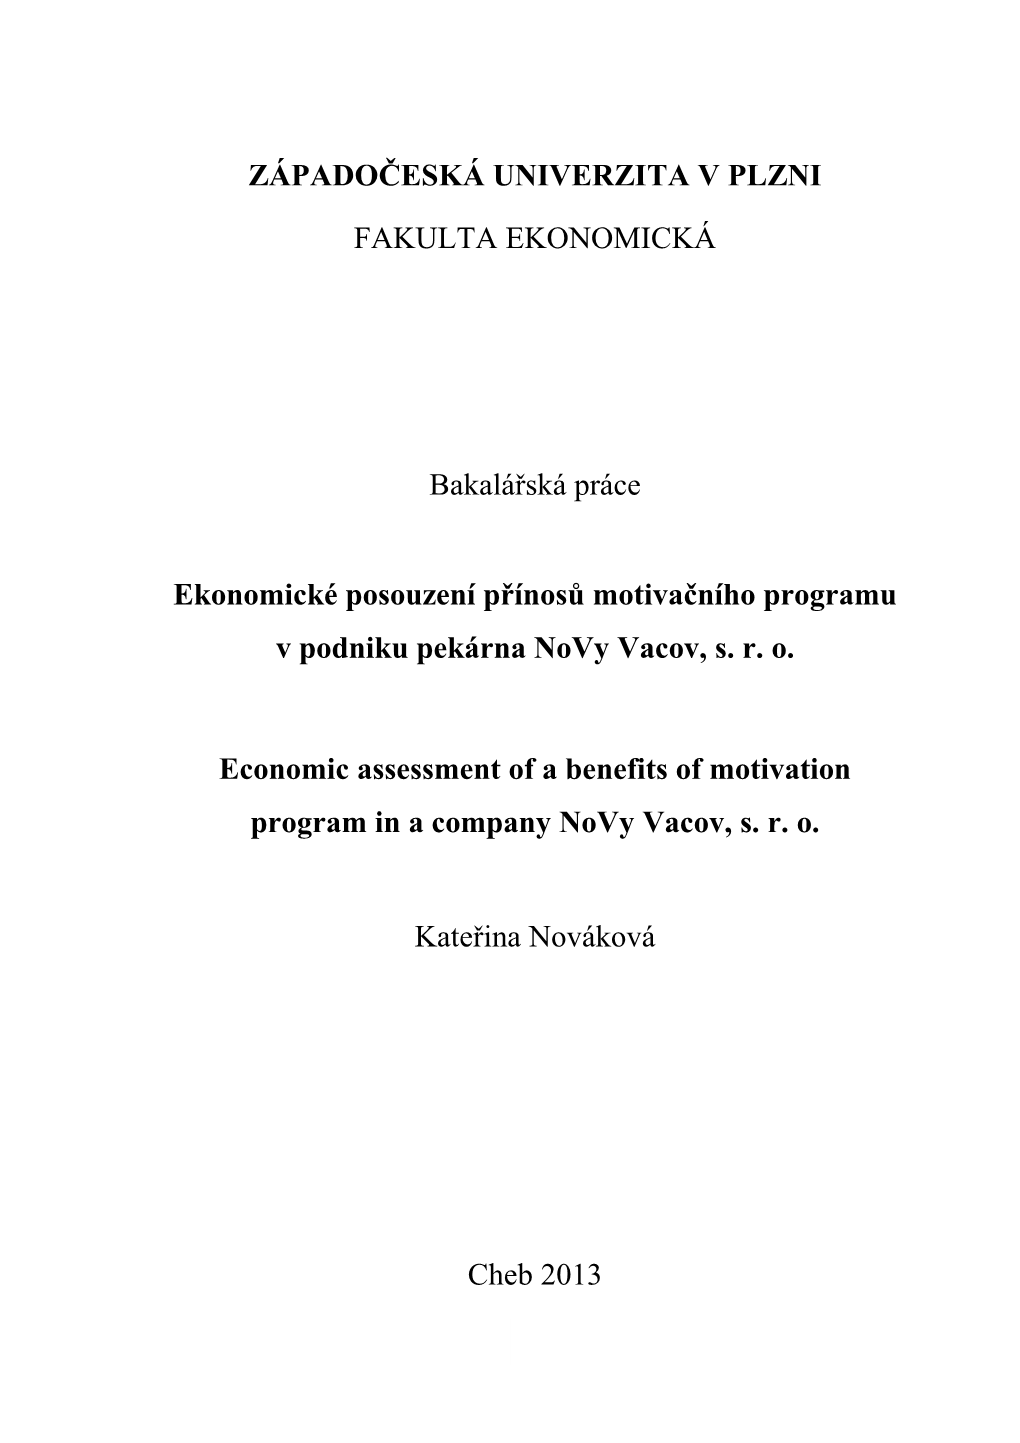 Ekonomické Posouzení Přínosů Motivačního Programu V Podniku